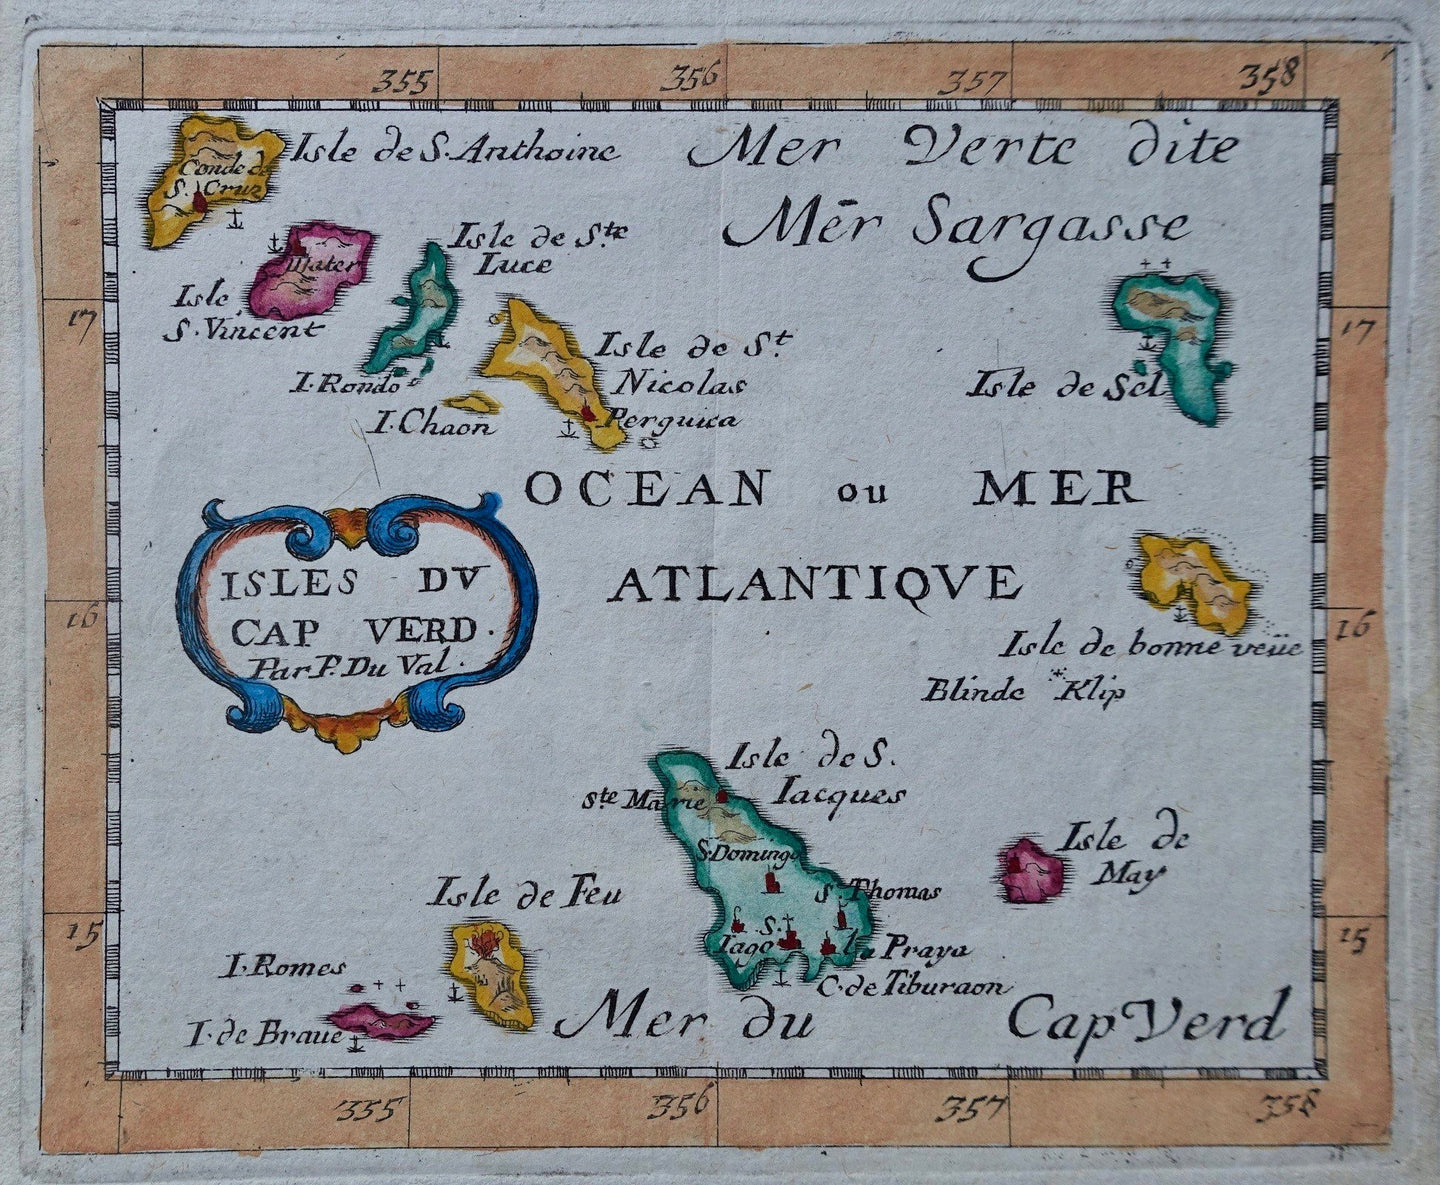 Kaapverdische Eilanden Cape Verde Islands - P Duval - 1682